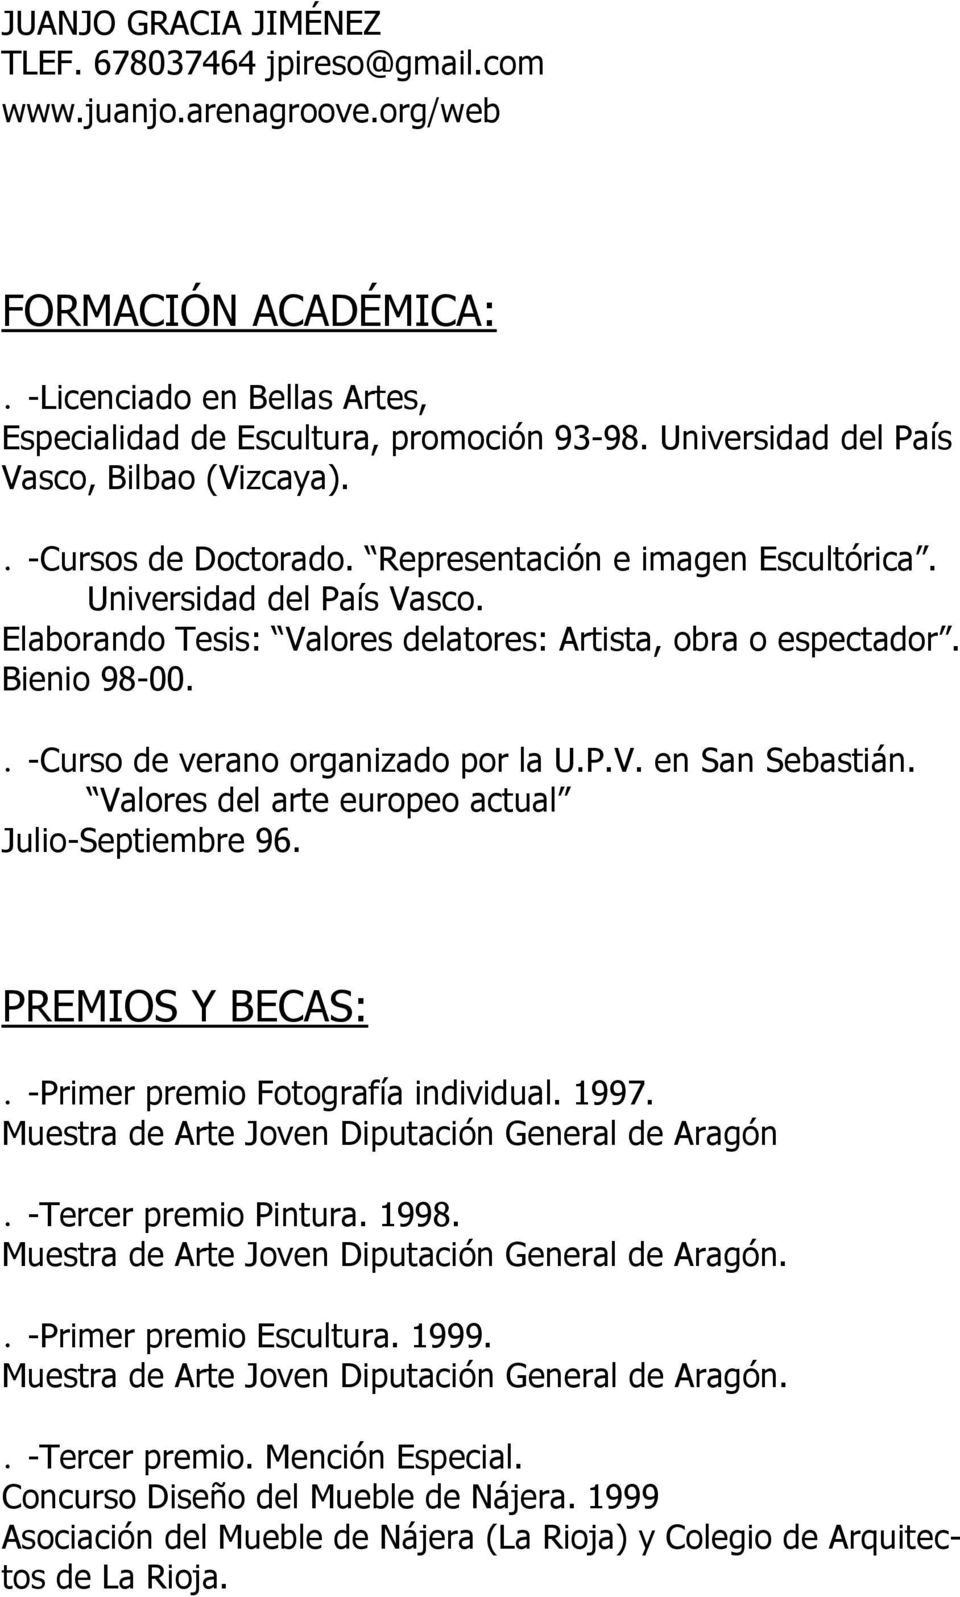 Bienio 98-00.. -Curso de verano organizado por la U.P.V. en San Sebastián. Valores del arte europeo actual Julio-Septiembre 96. PREMIOS Y BECAS:. -Primer premio Fotografía individual. 1997.